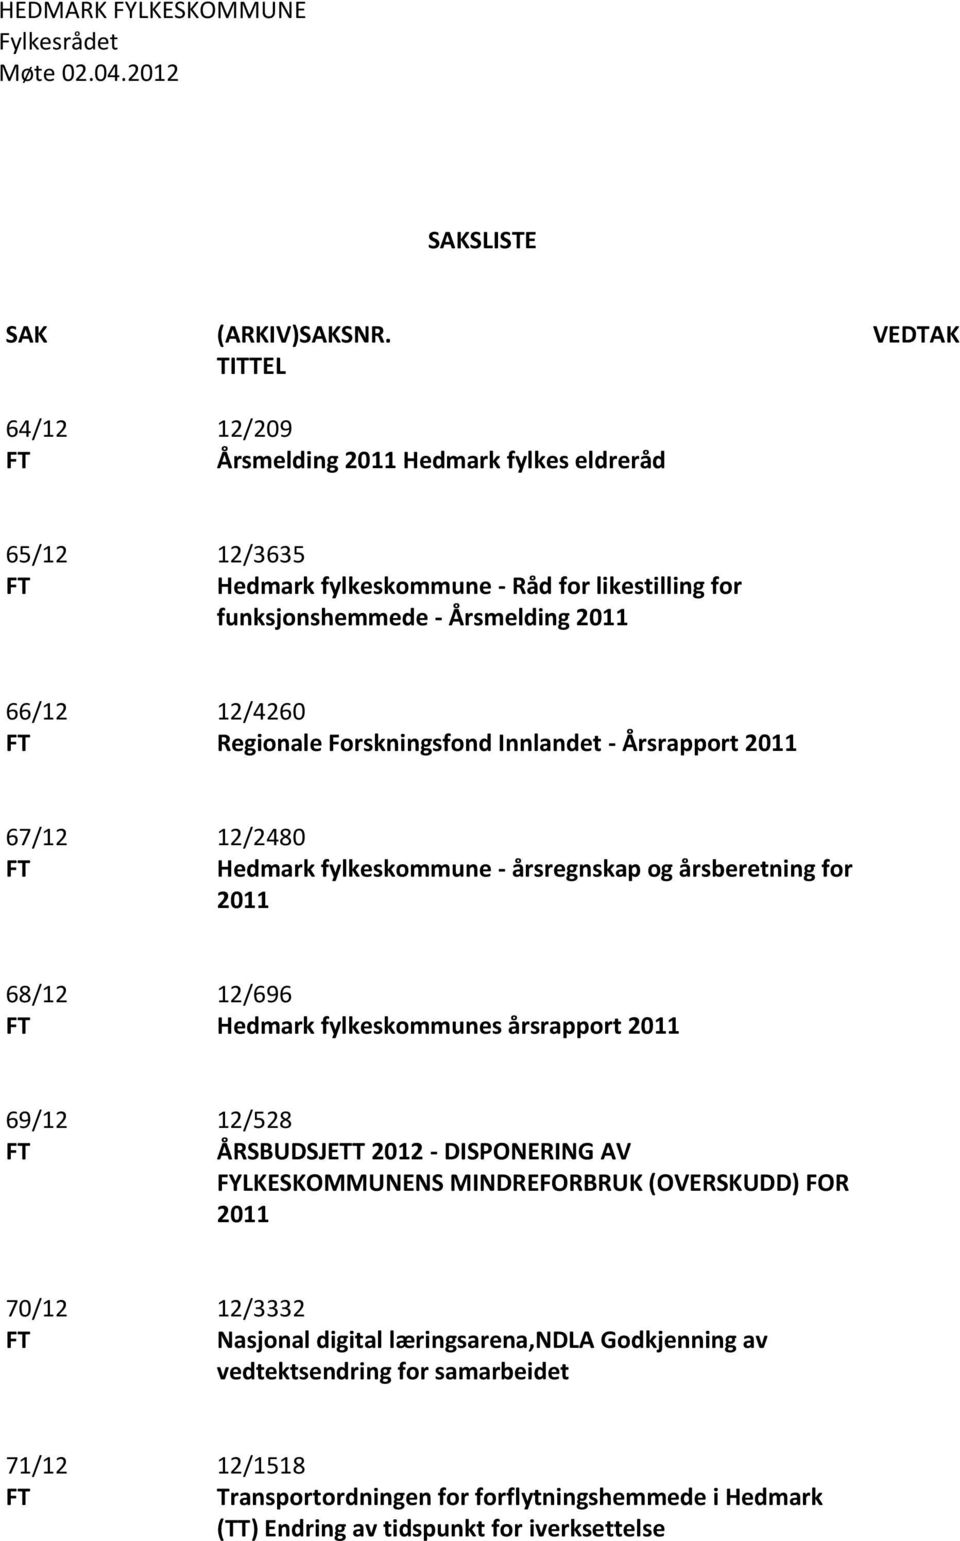 Forskningsfond Innlandet - Årsrapport 2011 67/12 FT 12/2480 Hedmark fylkeskommune - årsregnskap og årsberetning for 2011 68/12 FT 12/696 Hedmark fylkeskommunes årsrapport 2011 69/12 FT 12/528